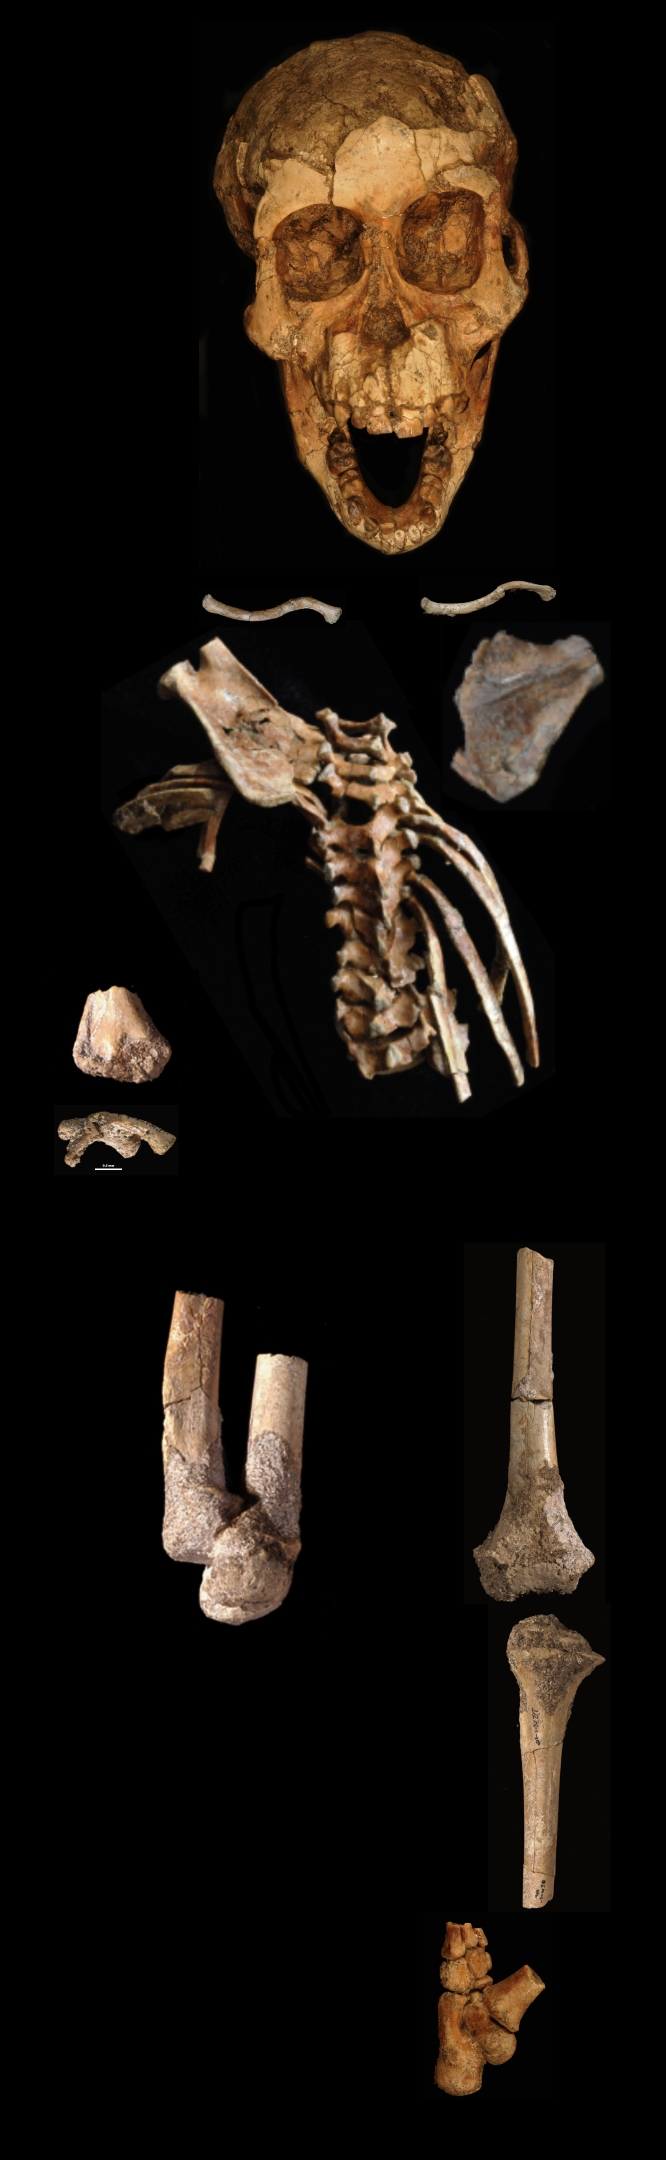 3.32 million-year-old skeleton of an Australopithecus afarensis child.